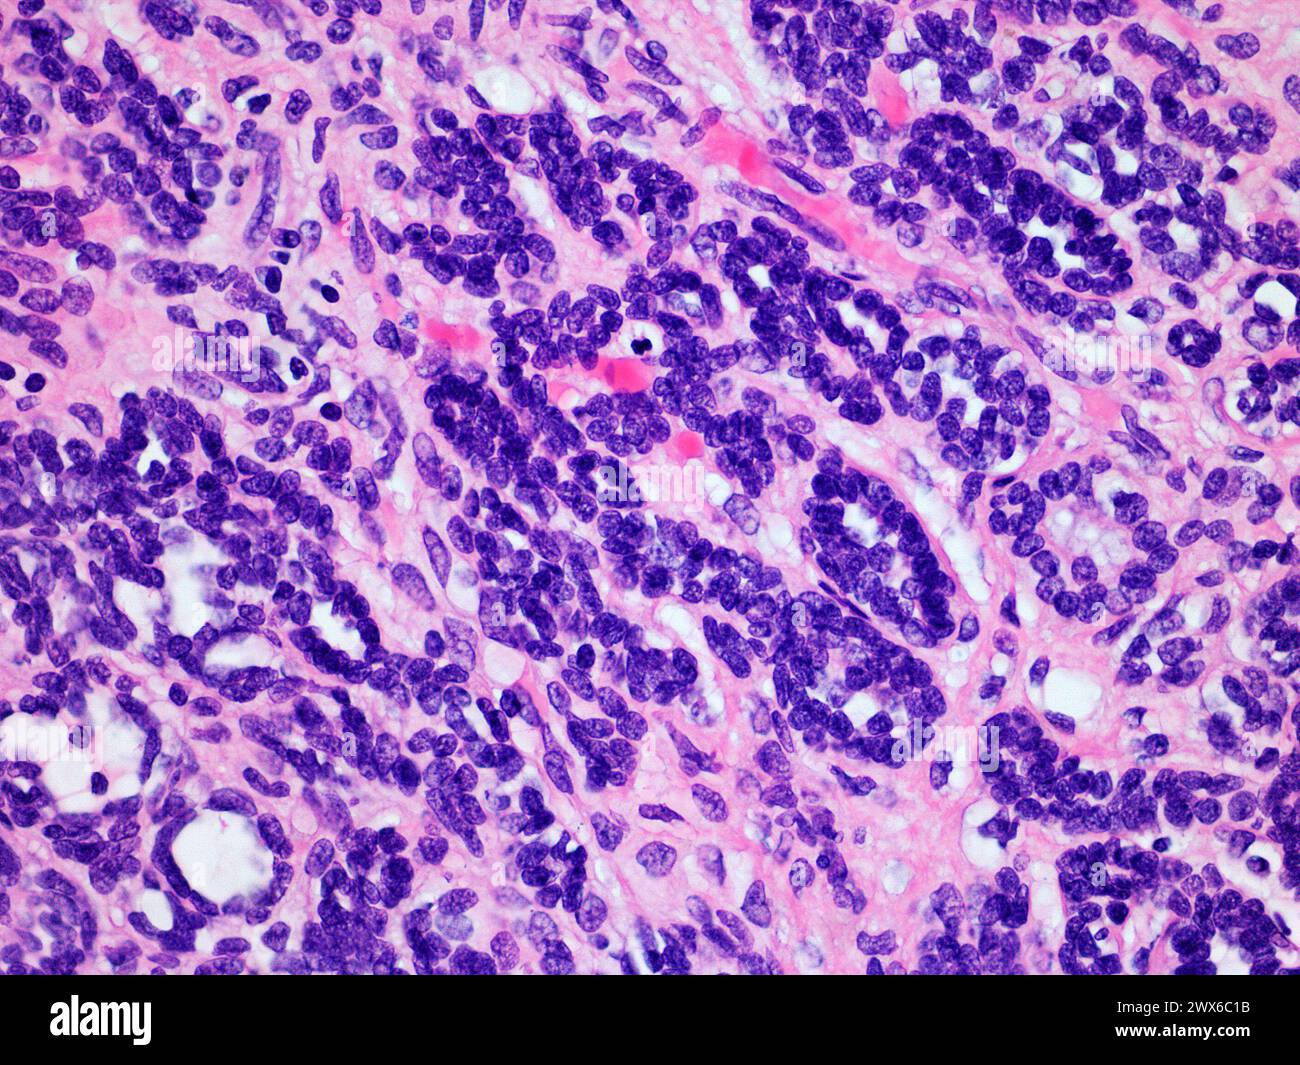 Image microscopique d'une tumeur de Wilms ou d'un néphroblastome d'un rein de Childs vue à agrandissement 400x avec coloration à l'hématoxyline et à l'éosine Banque D'Images